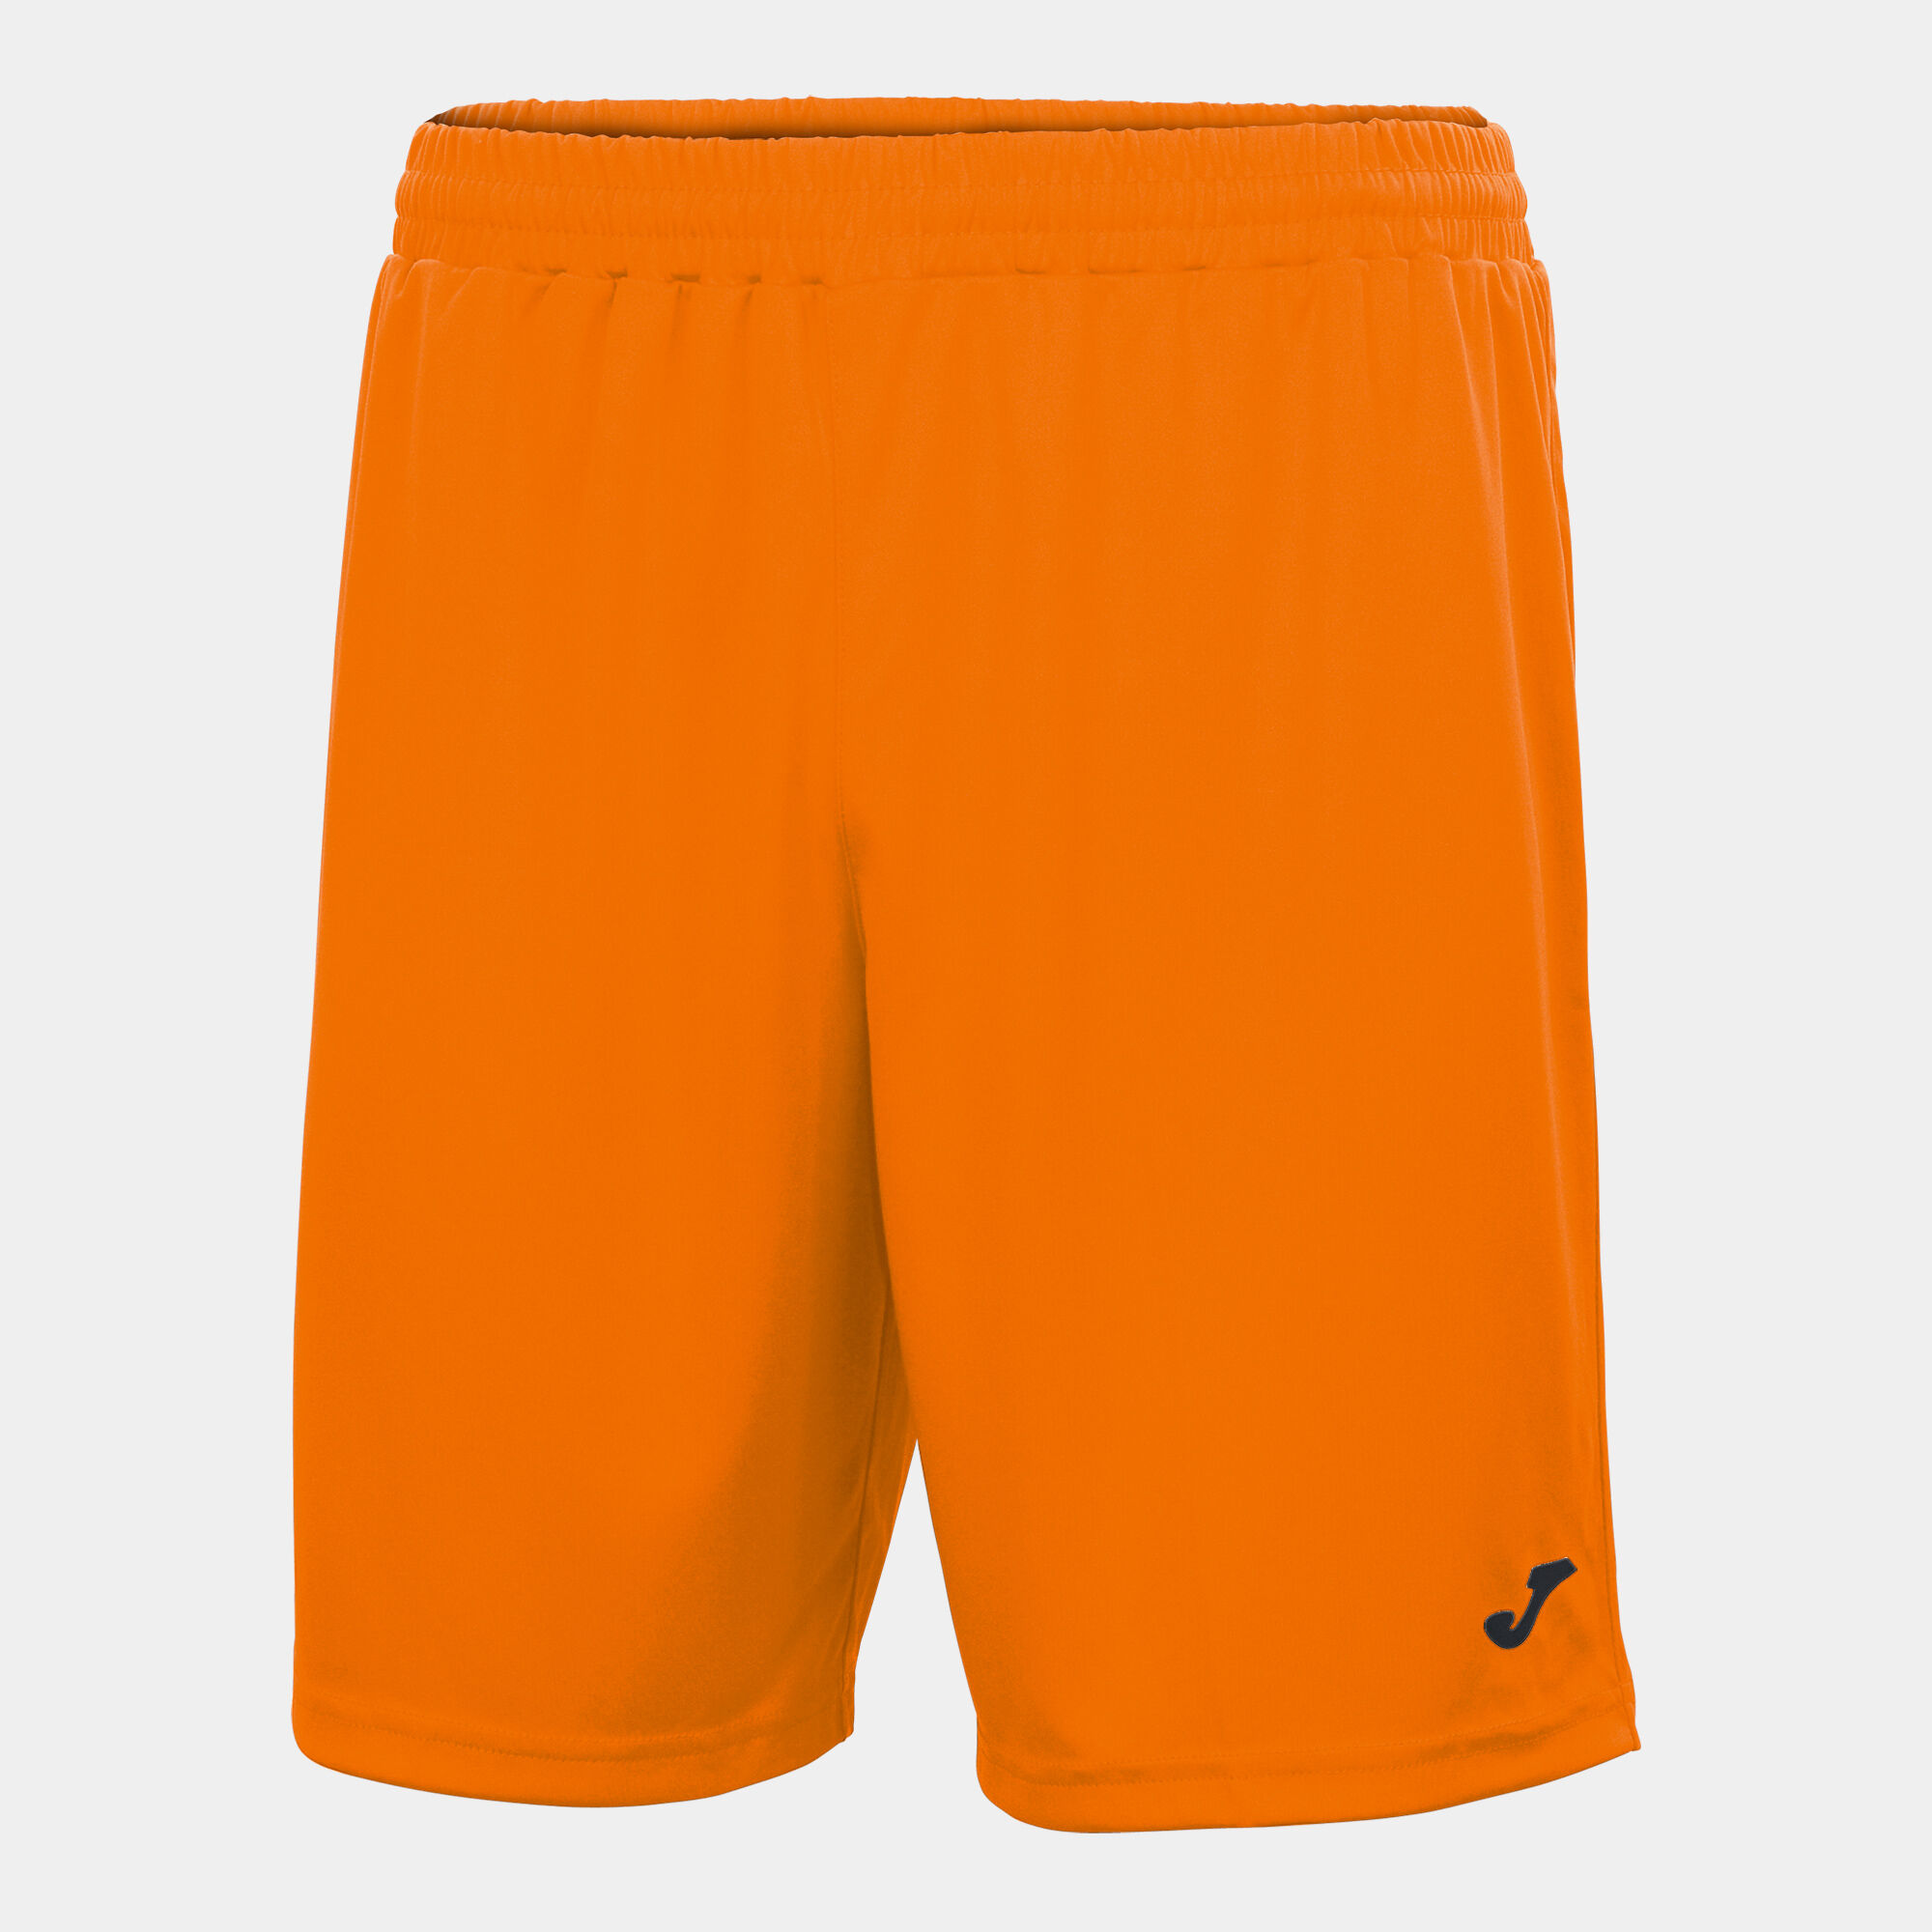 Shorts man Nobel orange